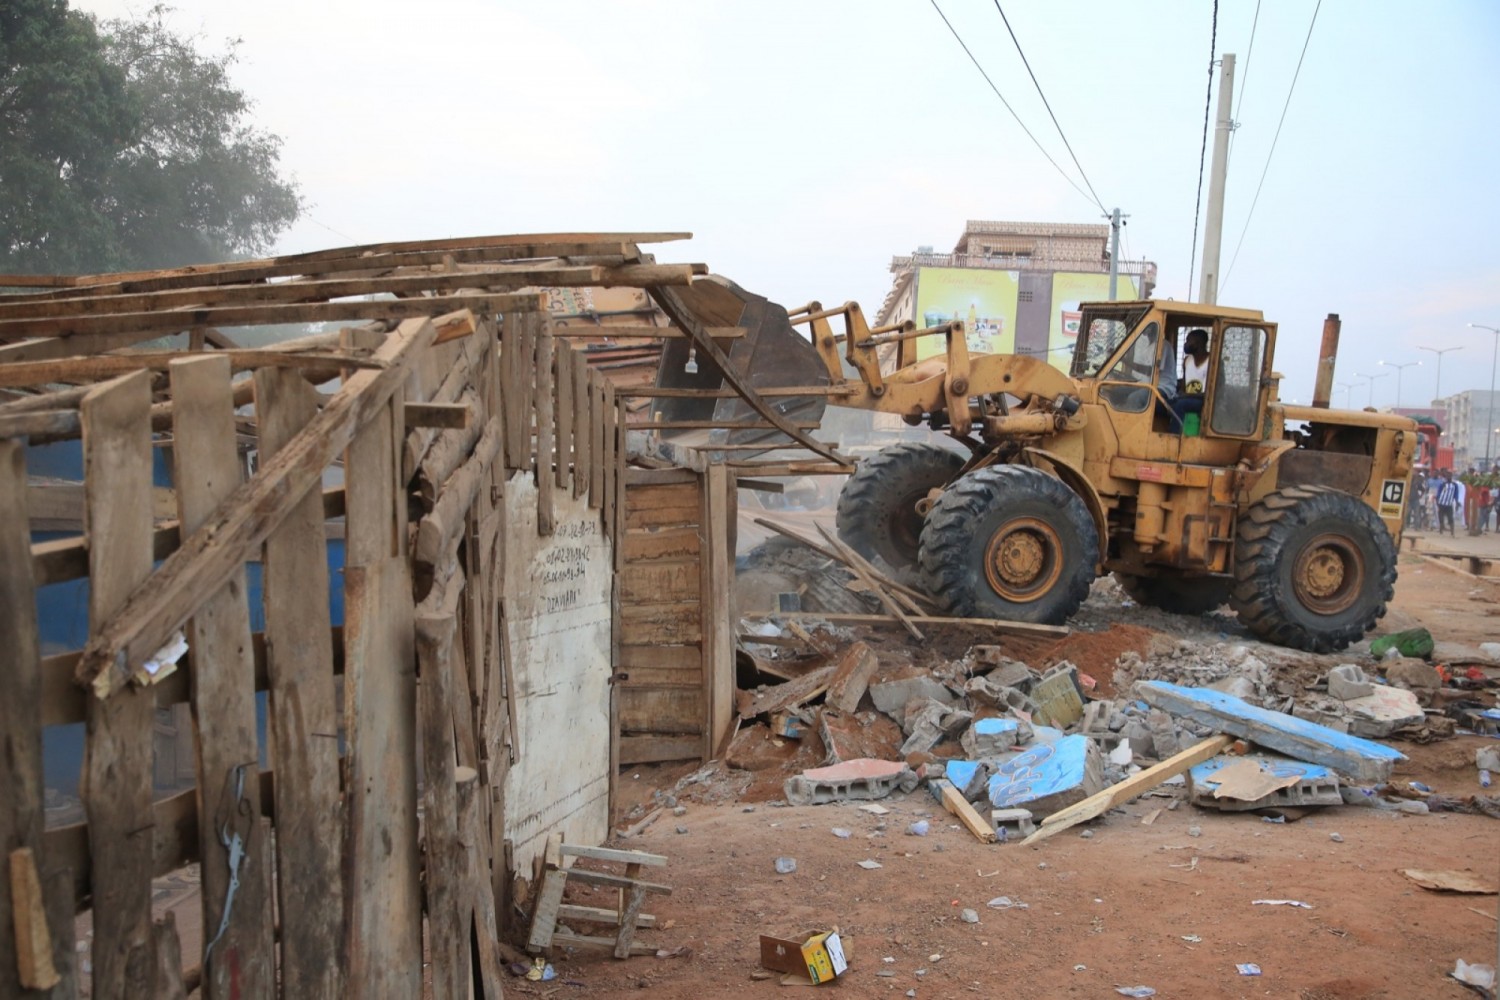 Côte d'Ivoire : En prélude à la CAN 2023, assainissement de la ville de Yamoussoukro, 500 engins enlevés sur les voies, 2000 abris précaires encombrants le domaine public détruits